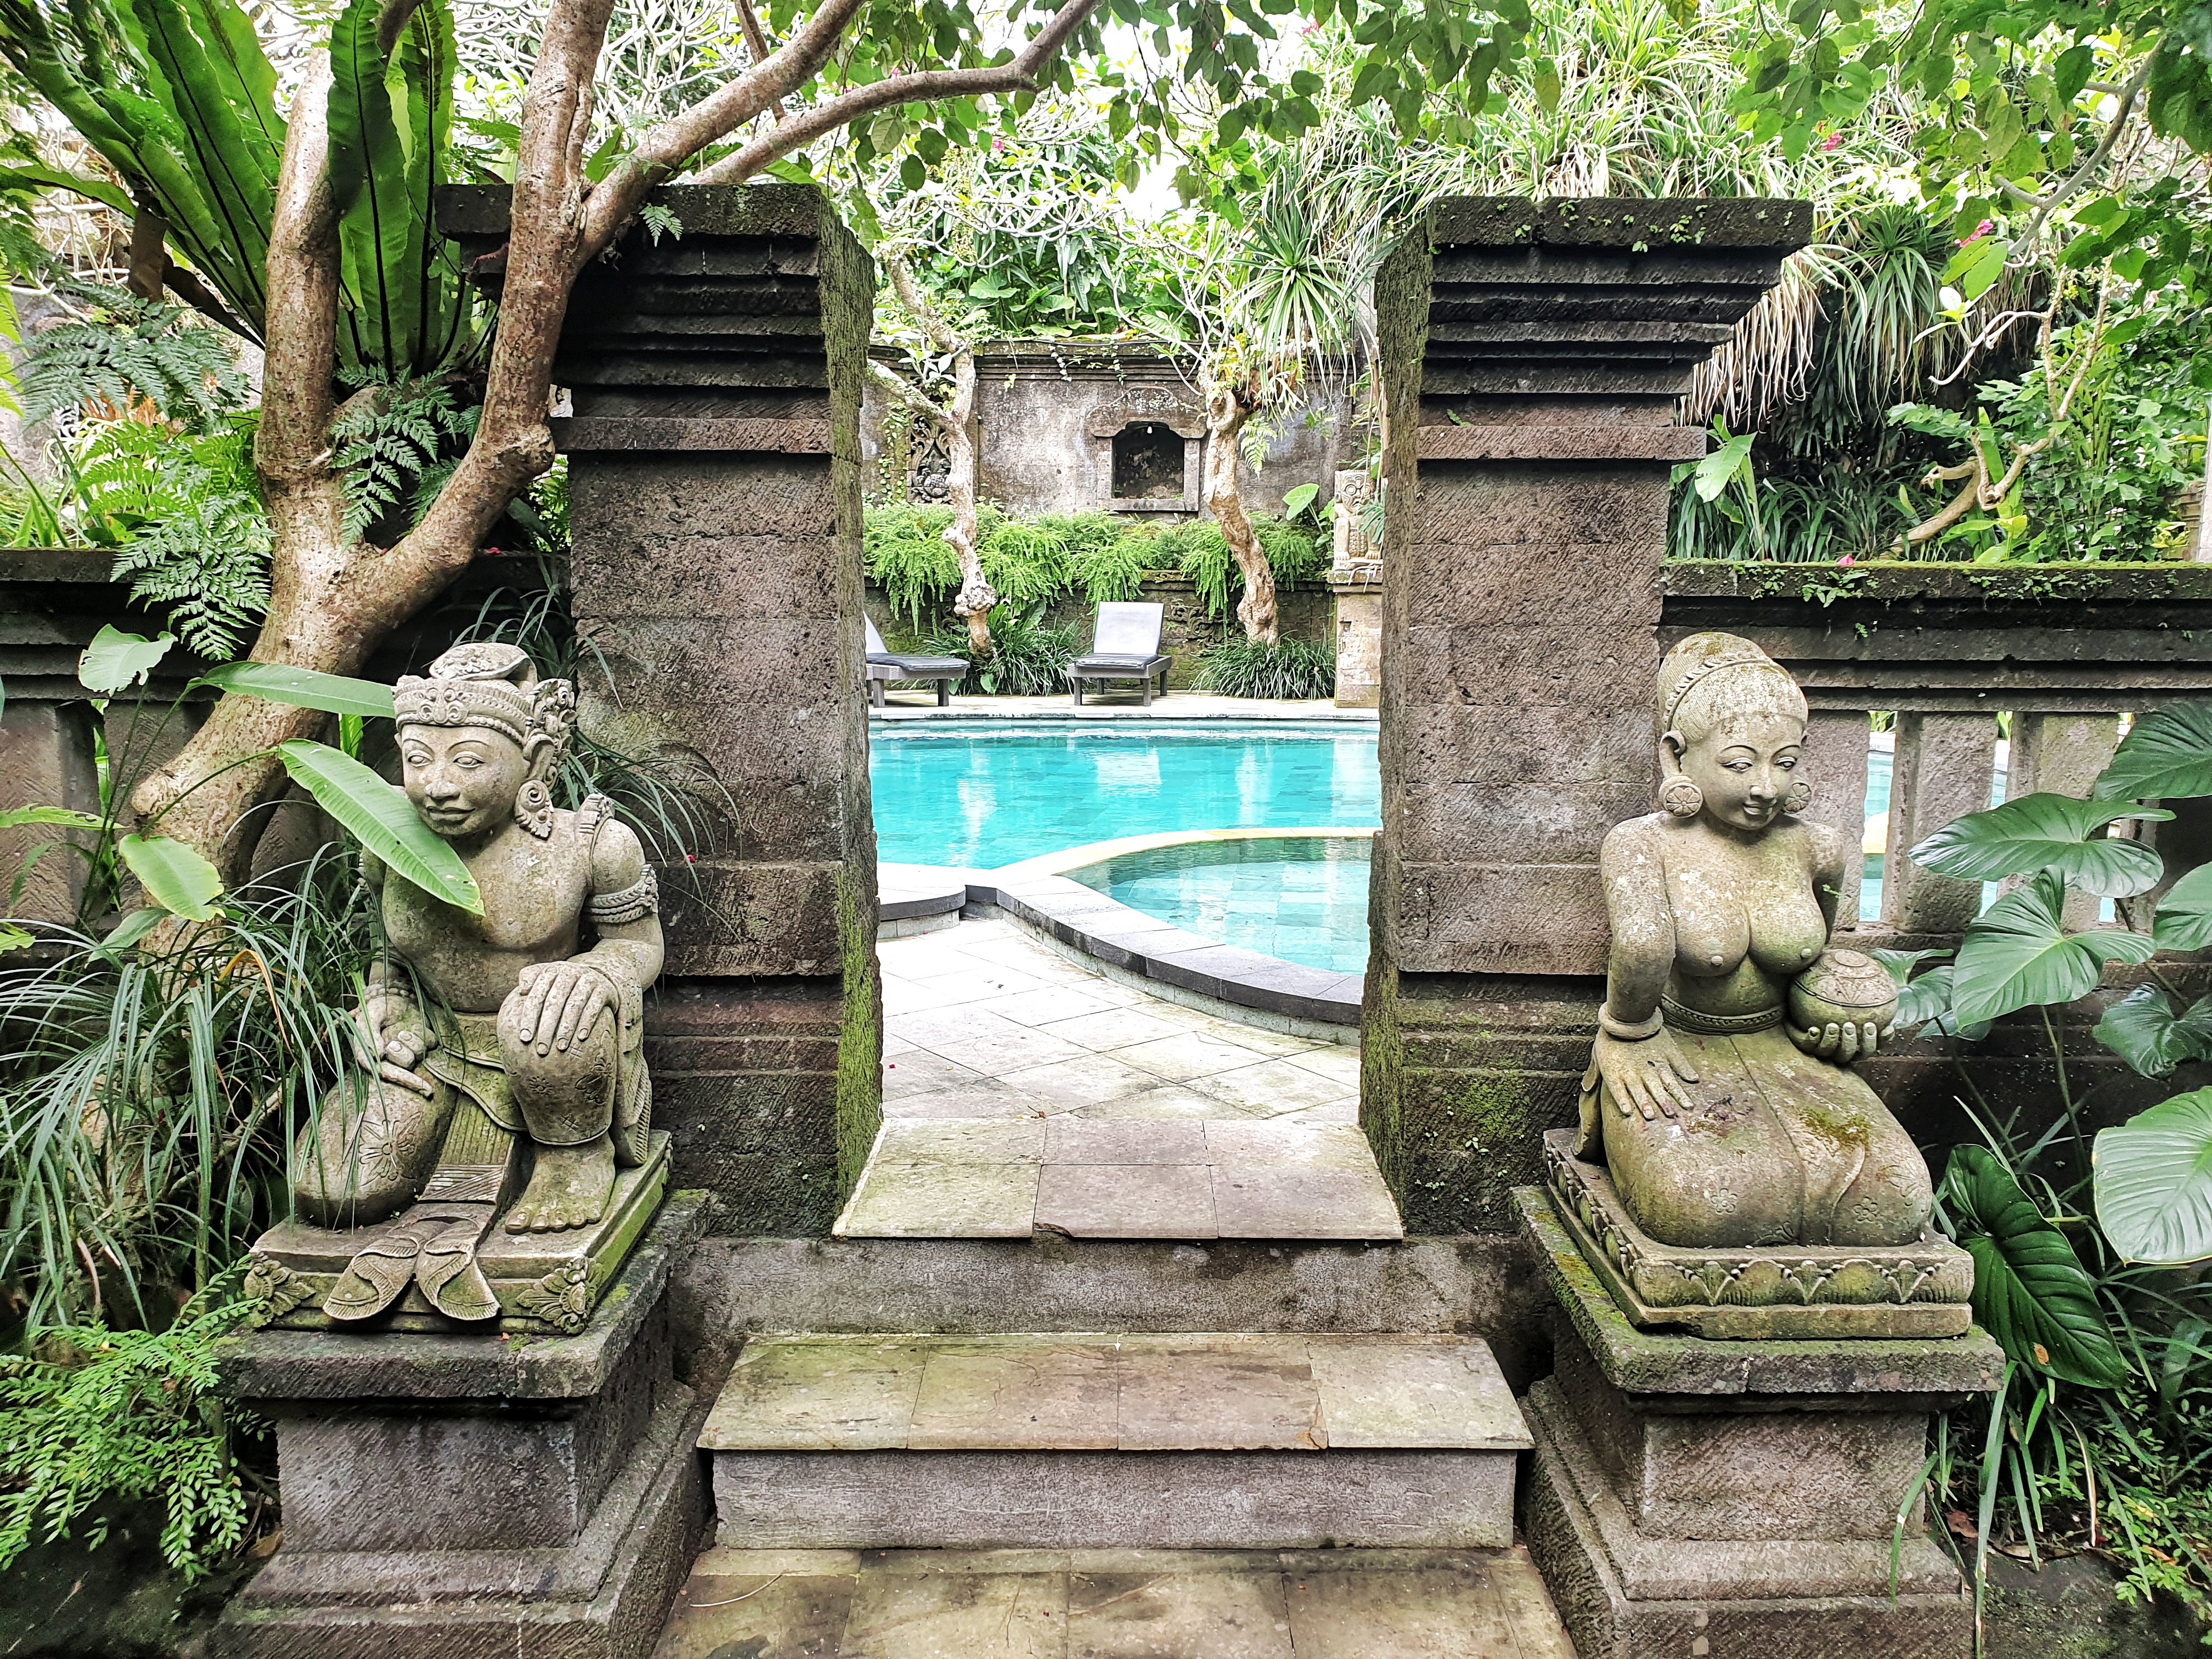 Honeymoon Guesthouse, Ubud, Bali, Indonesia